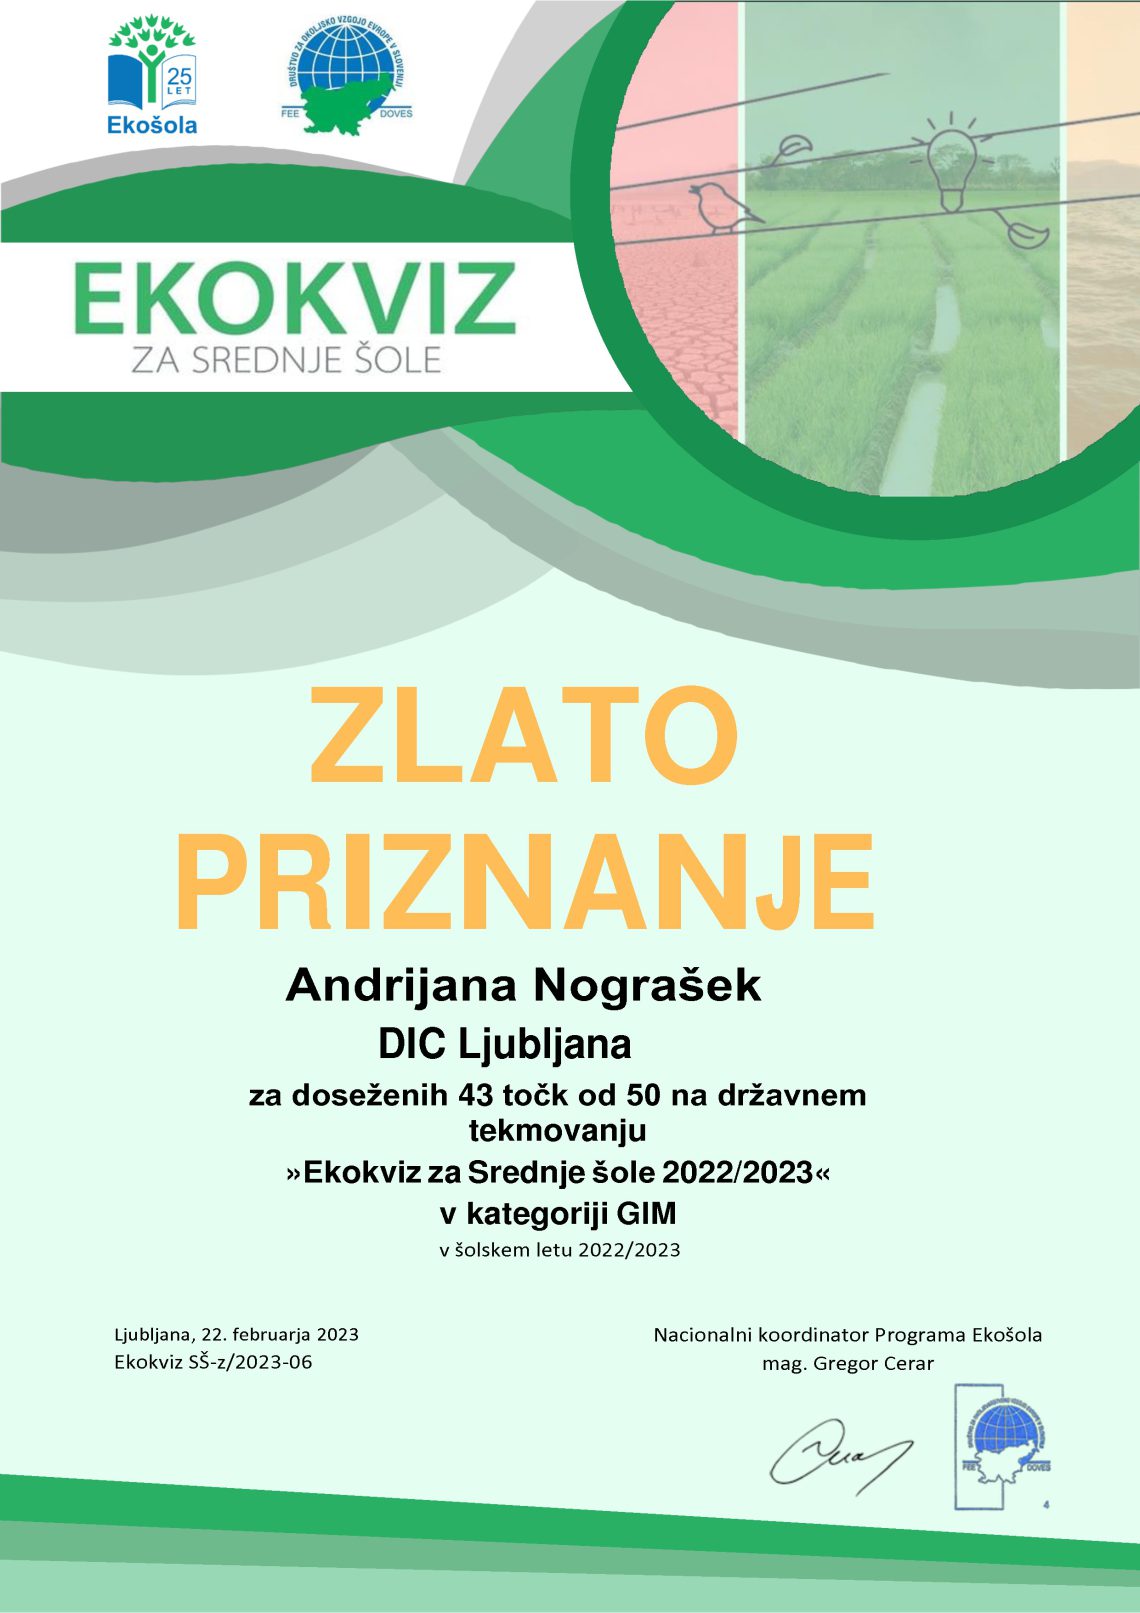 Ekokviz Zlato priznanje Andirjana Nograšek. Ekokviz za srednje šole 2022/2023 v kategoriji SSI PTI